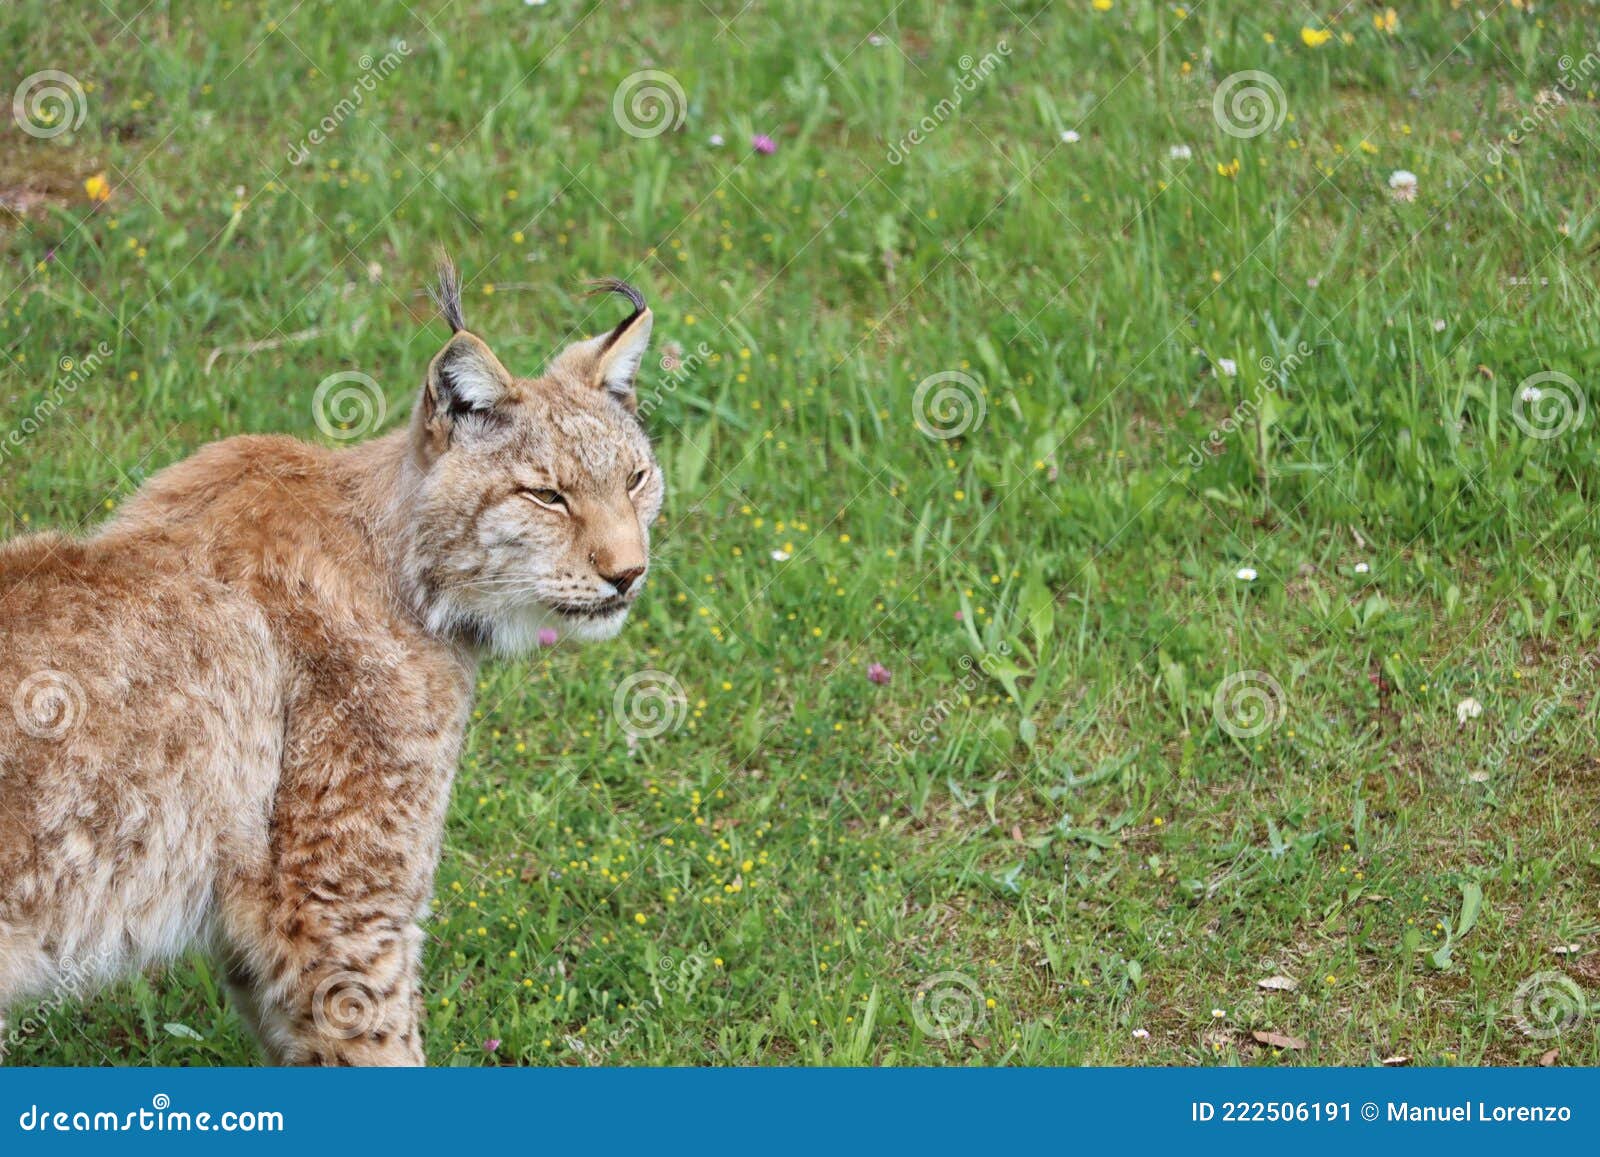 beautiful big cat lynx wild freedom fear danger extinction